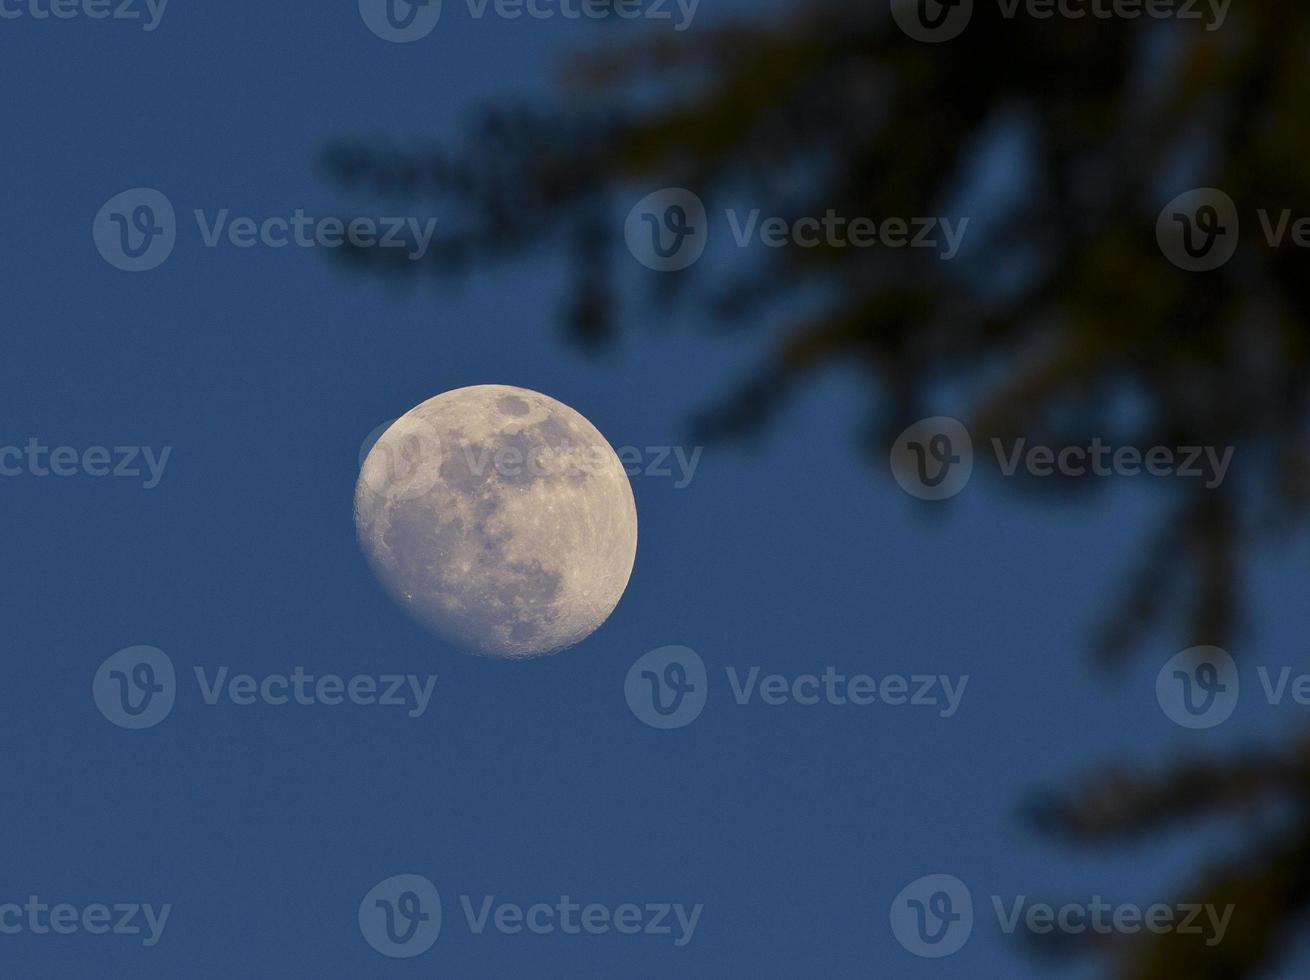 lune dans le ciel bleu photo